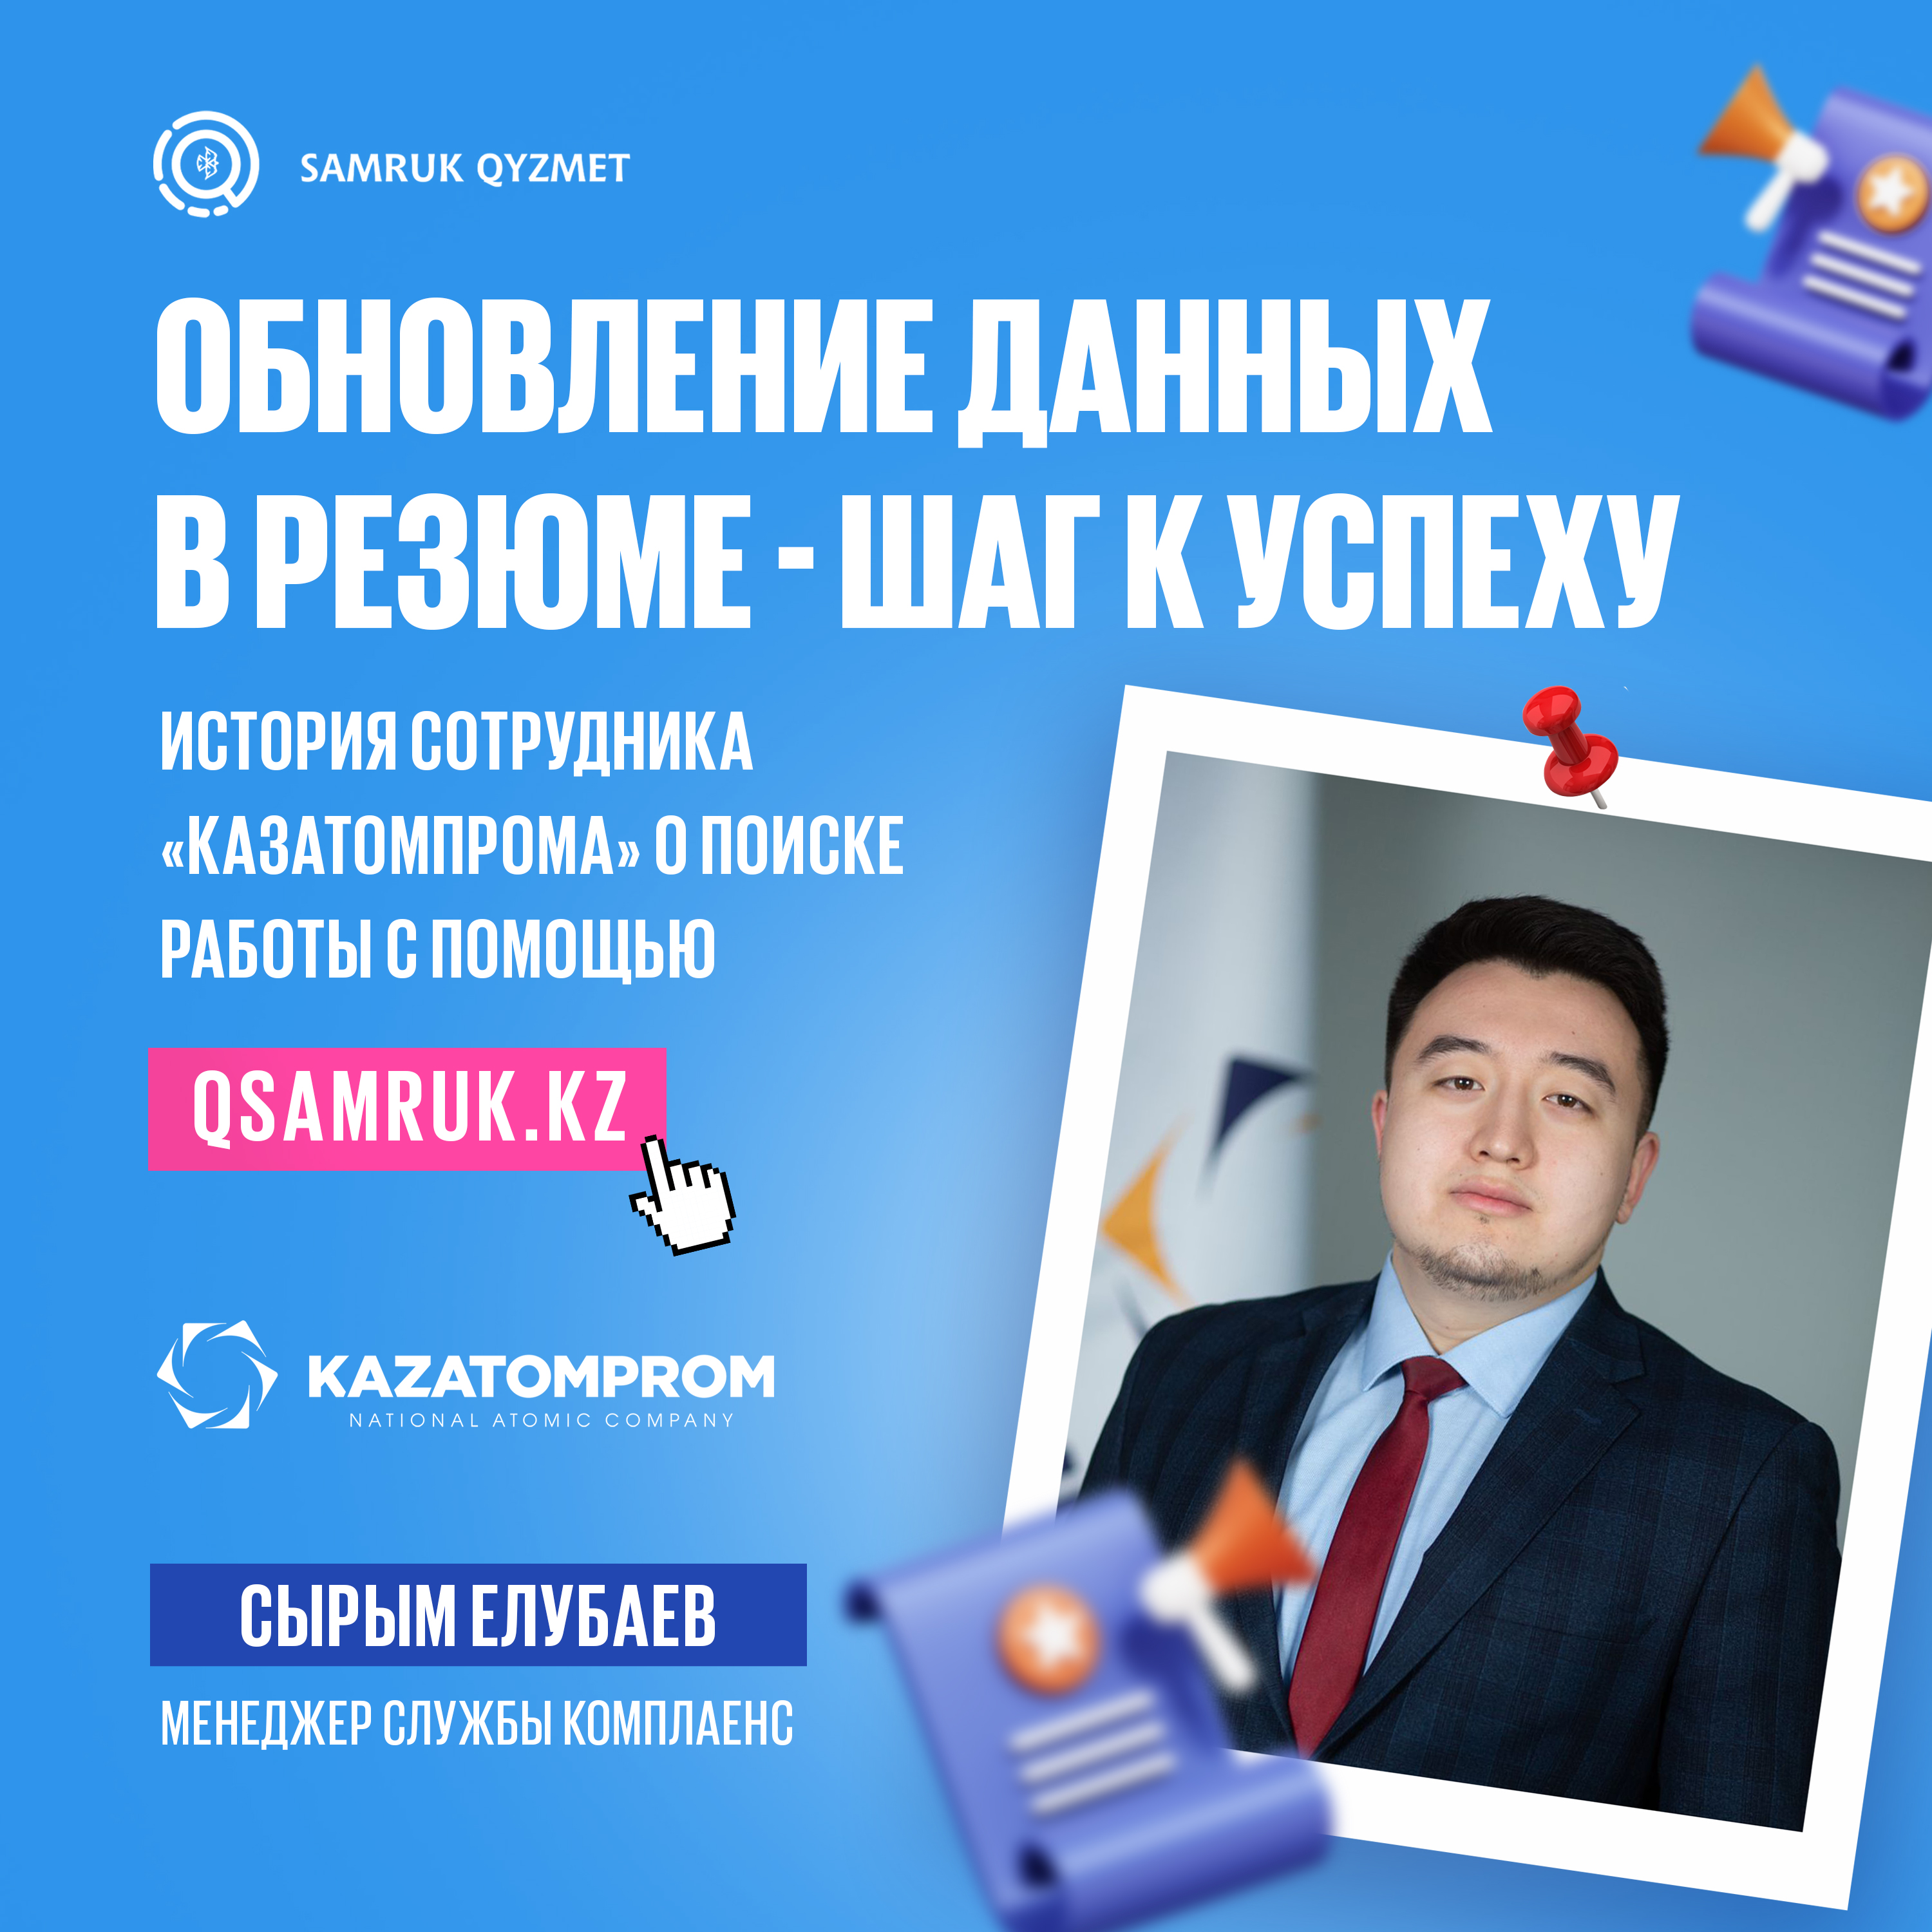 «Обновление данных в резюме - шаг к успеху» Сотрудник «Казатомпрома» о поиске работы с помощью Samruk Qyzmet